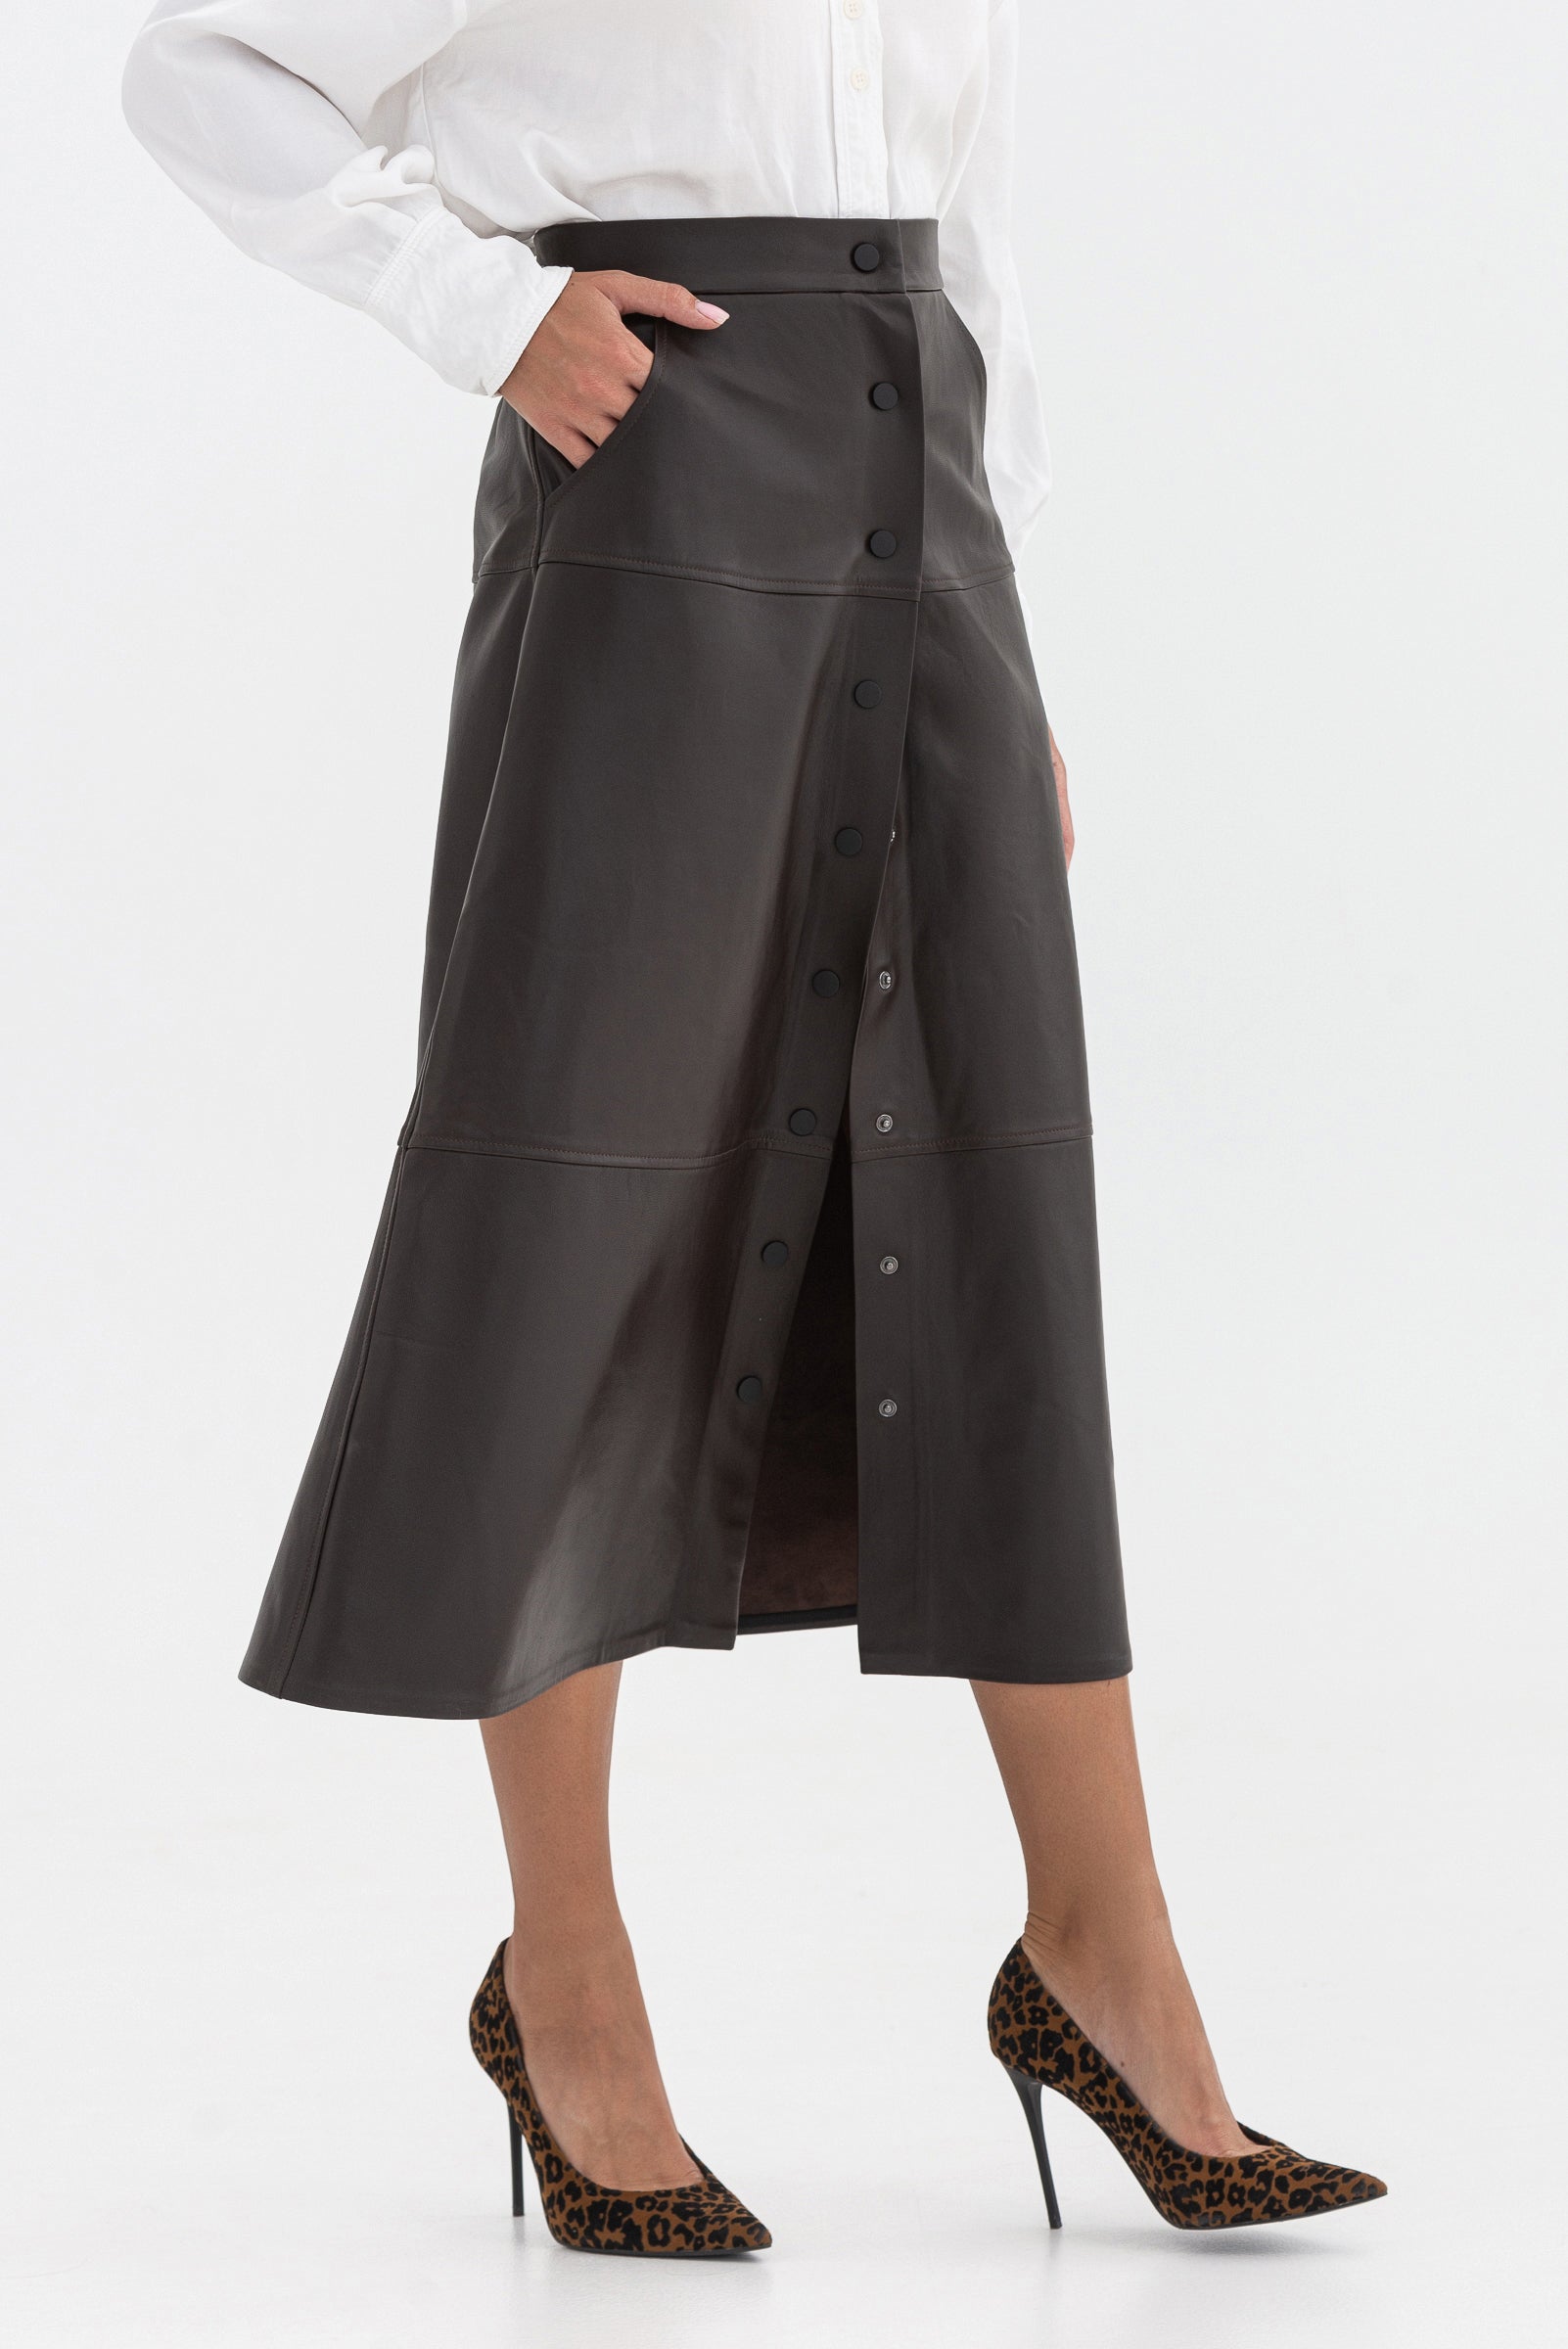 Sheepskin A-line skirt. Buttoned.